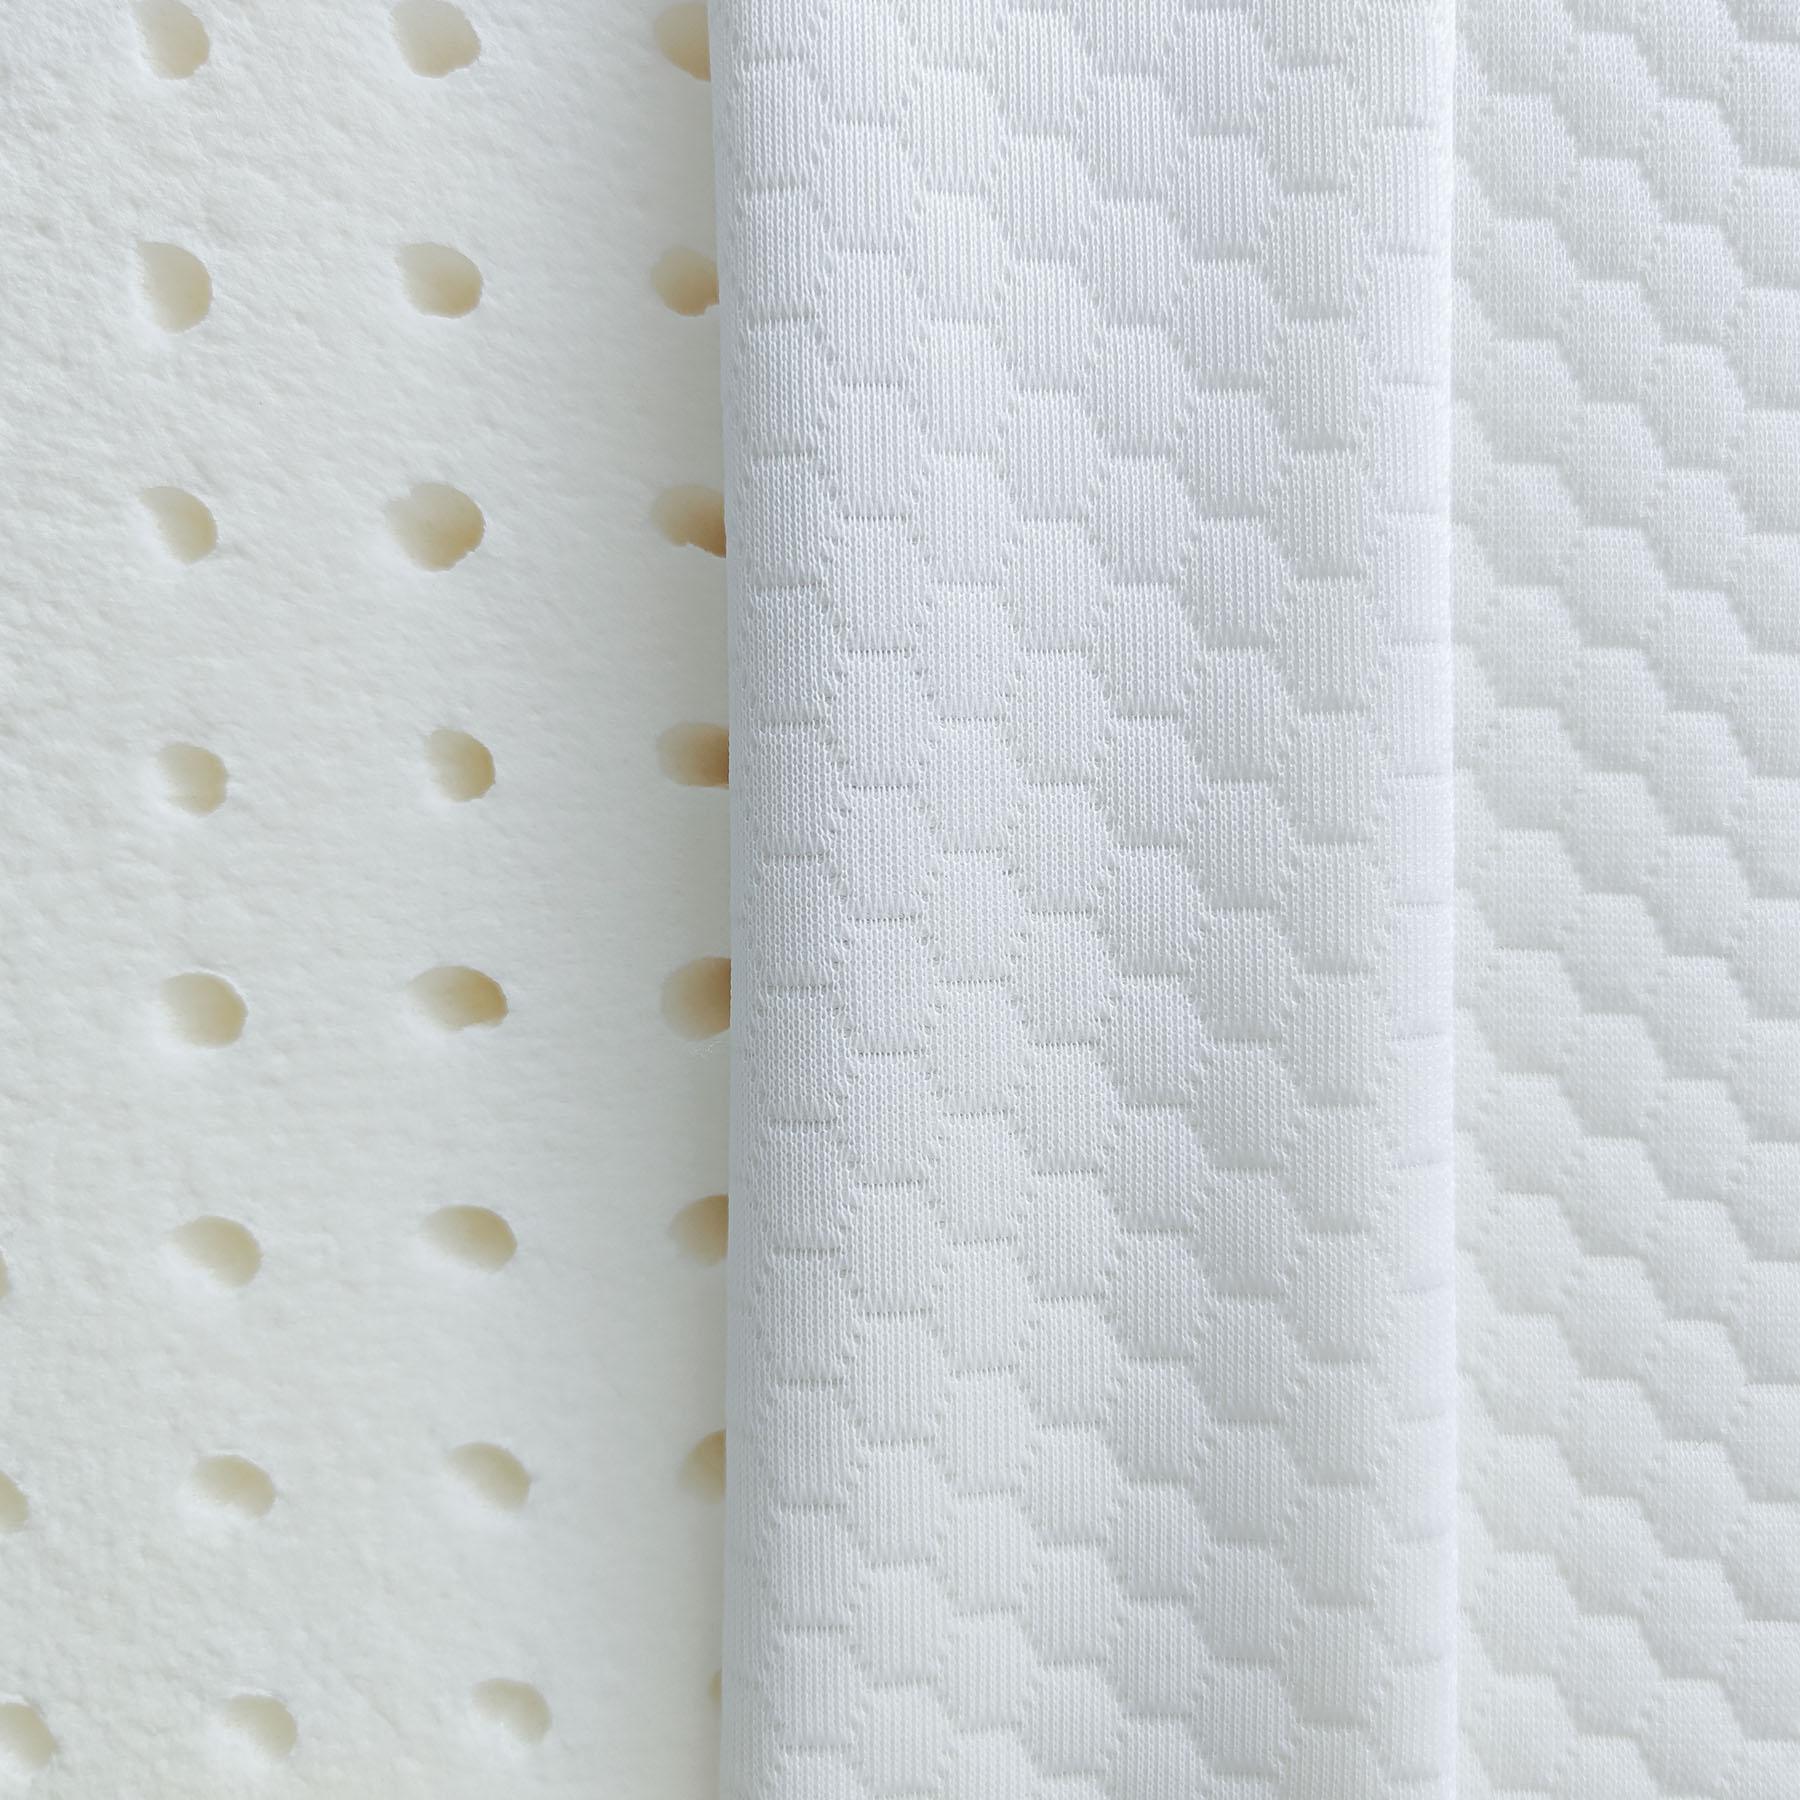 Dettaglio della superficie del cuscino cervicale Memo in memory foam di Beliamo, progettato per offrire comfort e supporto ergonomico